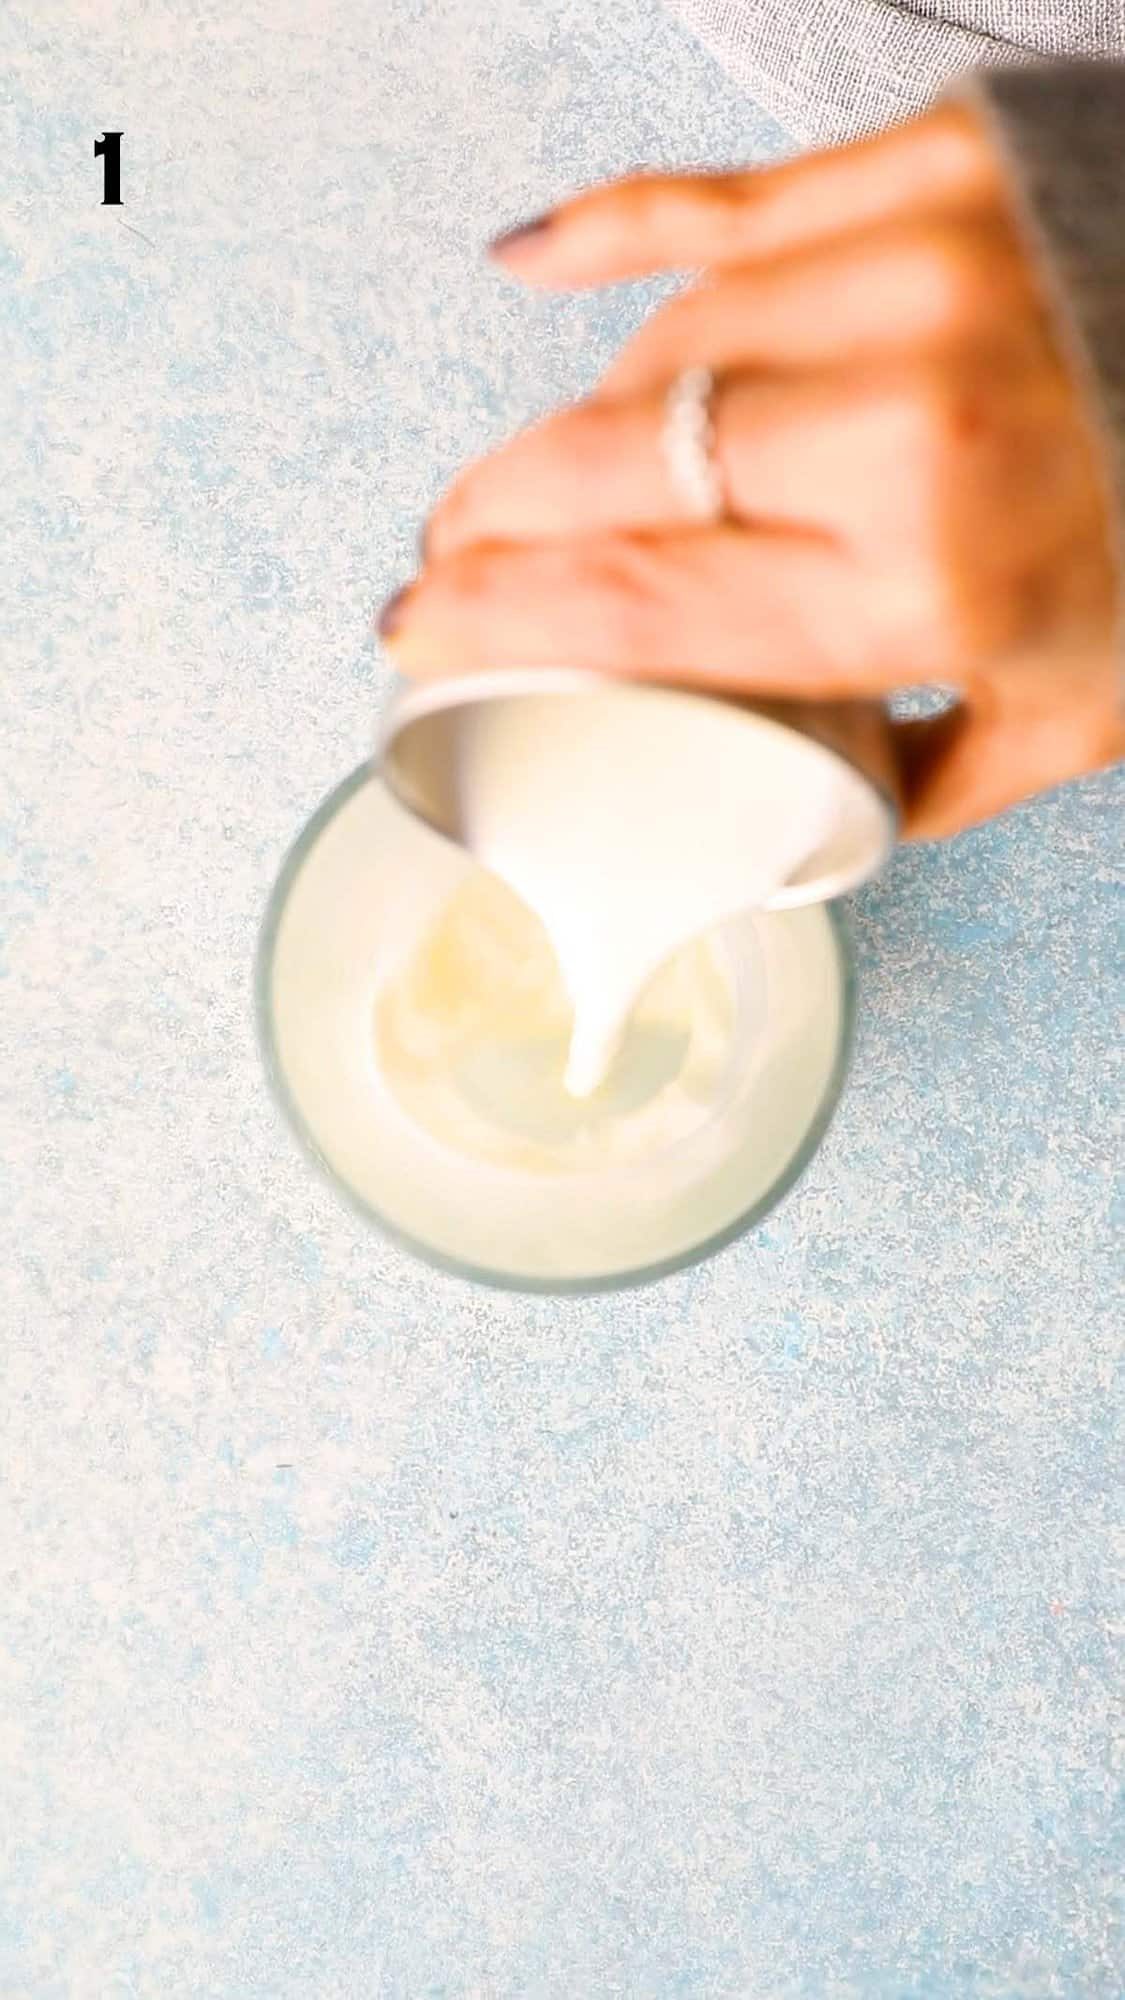 a hand pouring milk into a glass mug.